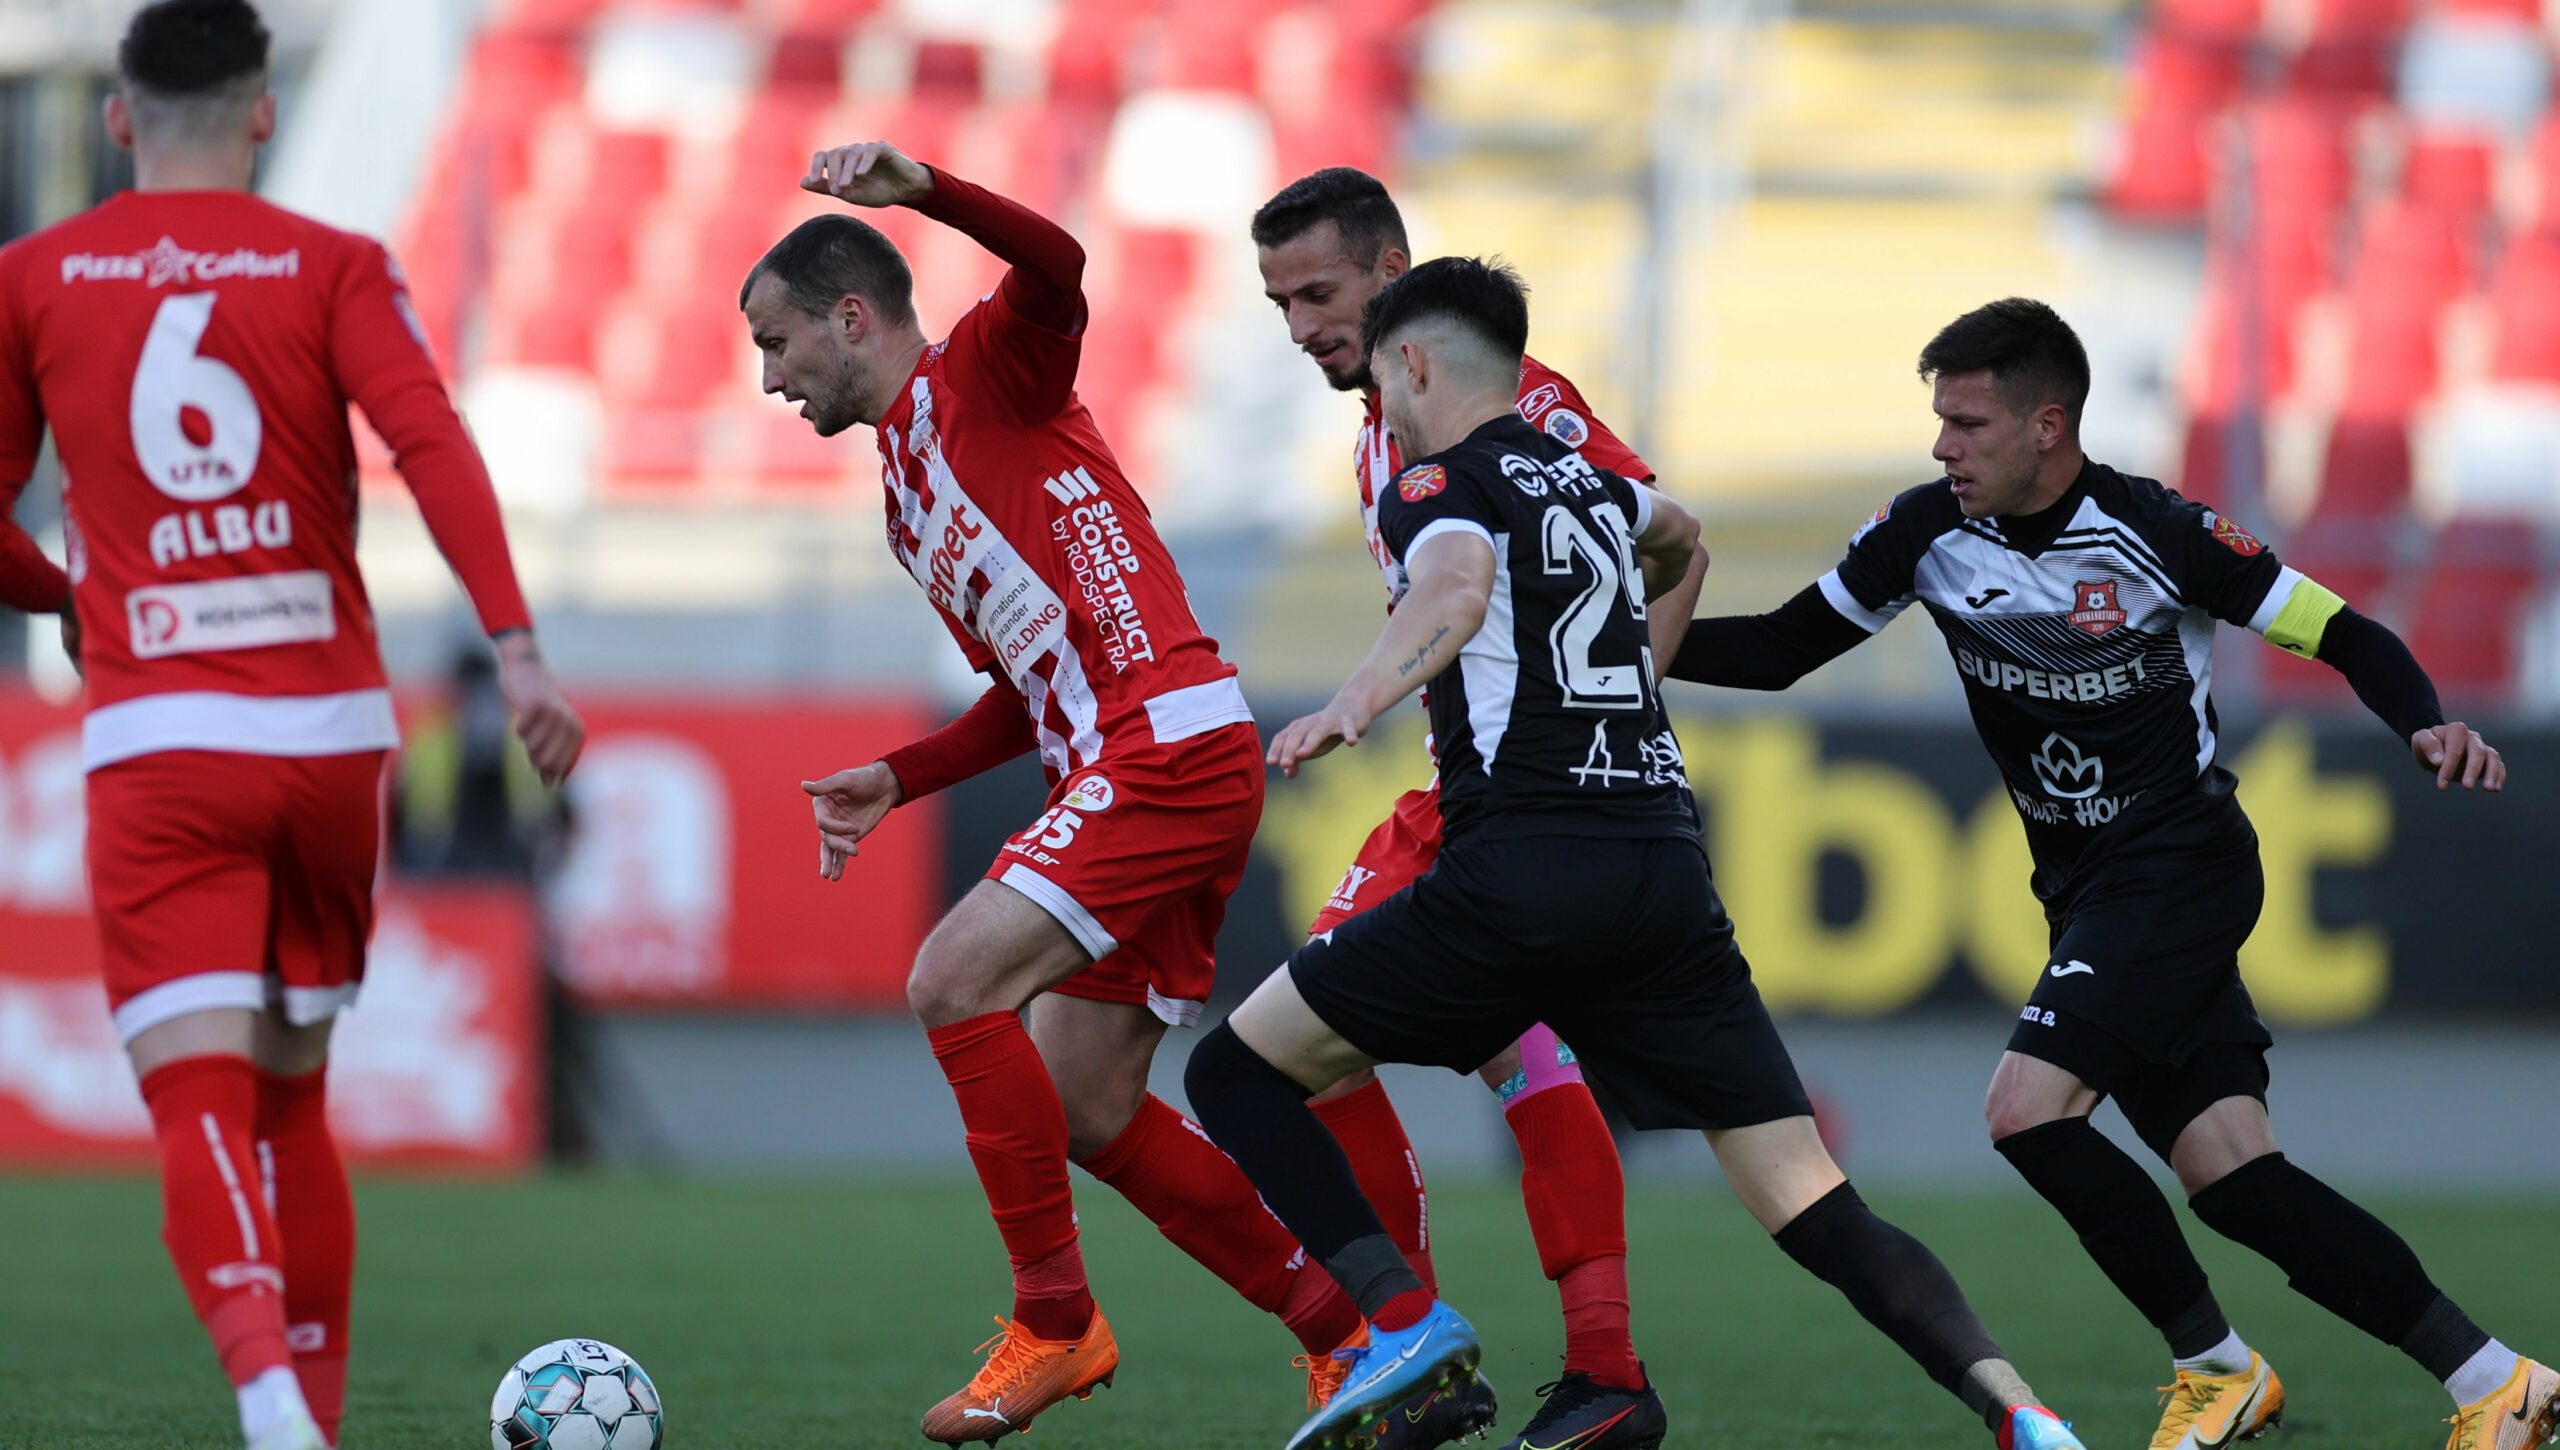 FIFA 23, FC Hermannstadt vs UTA Arad - Superliga